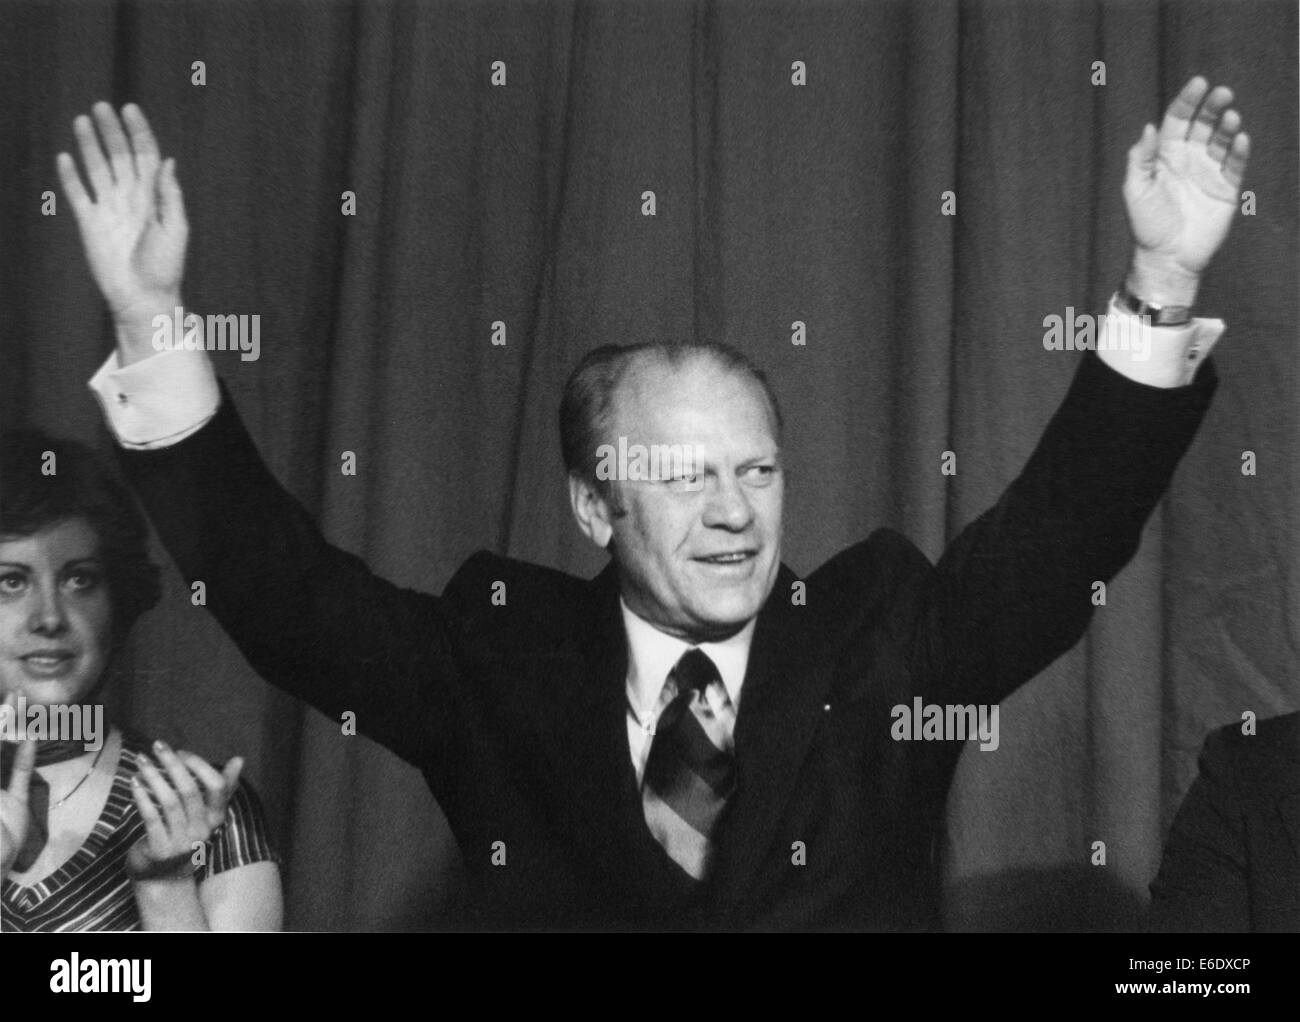 Gerald Ford, 38th U.S. Presidente, ritratto con bracci sollevati mentre serve come casa da leader della minoranza, 1972 Foto Stock